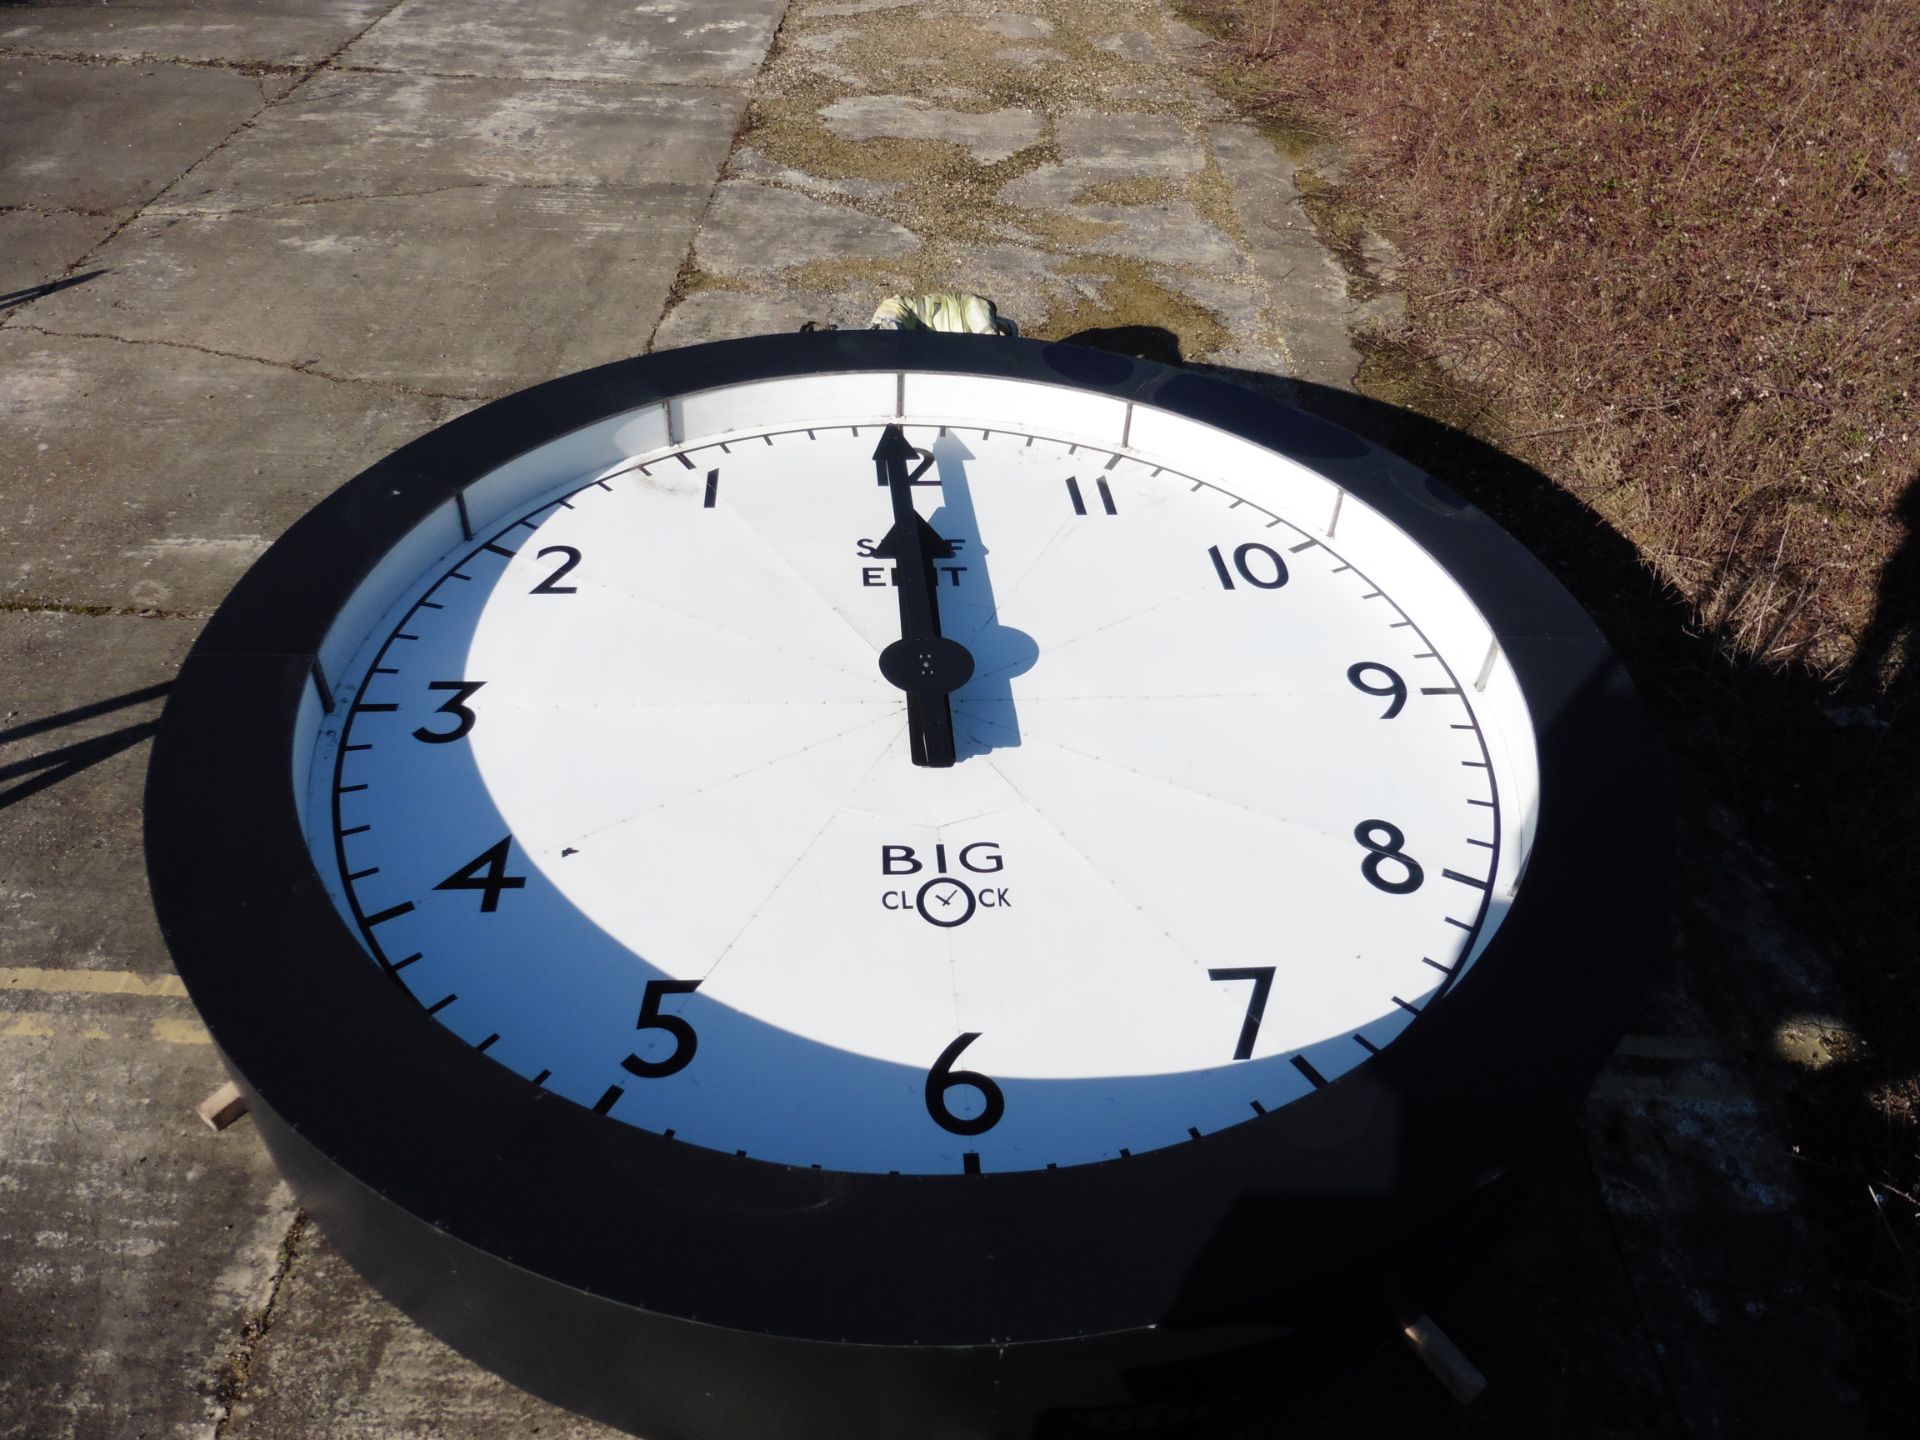 Large backwards clock with life-size man